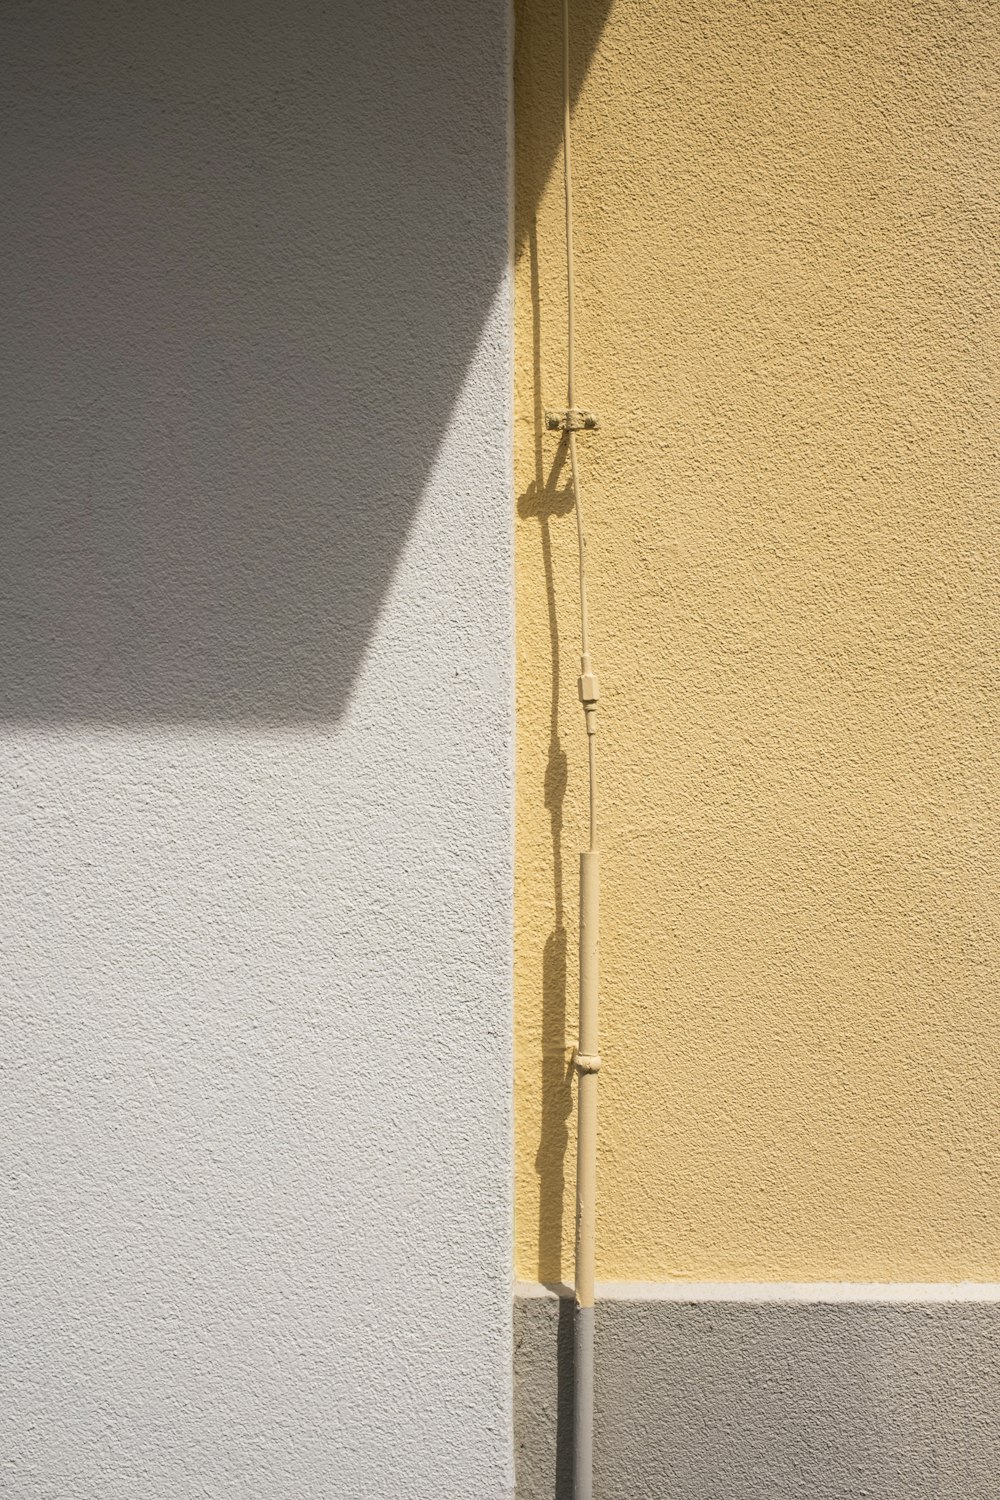 gelbe Holztür mit silbernem Türhebel